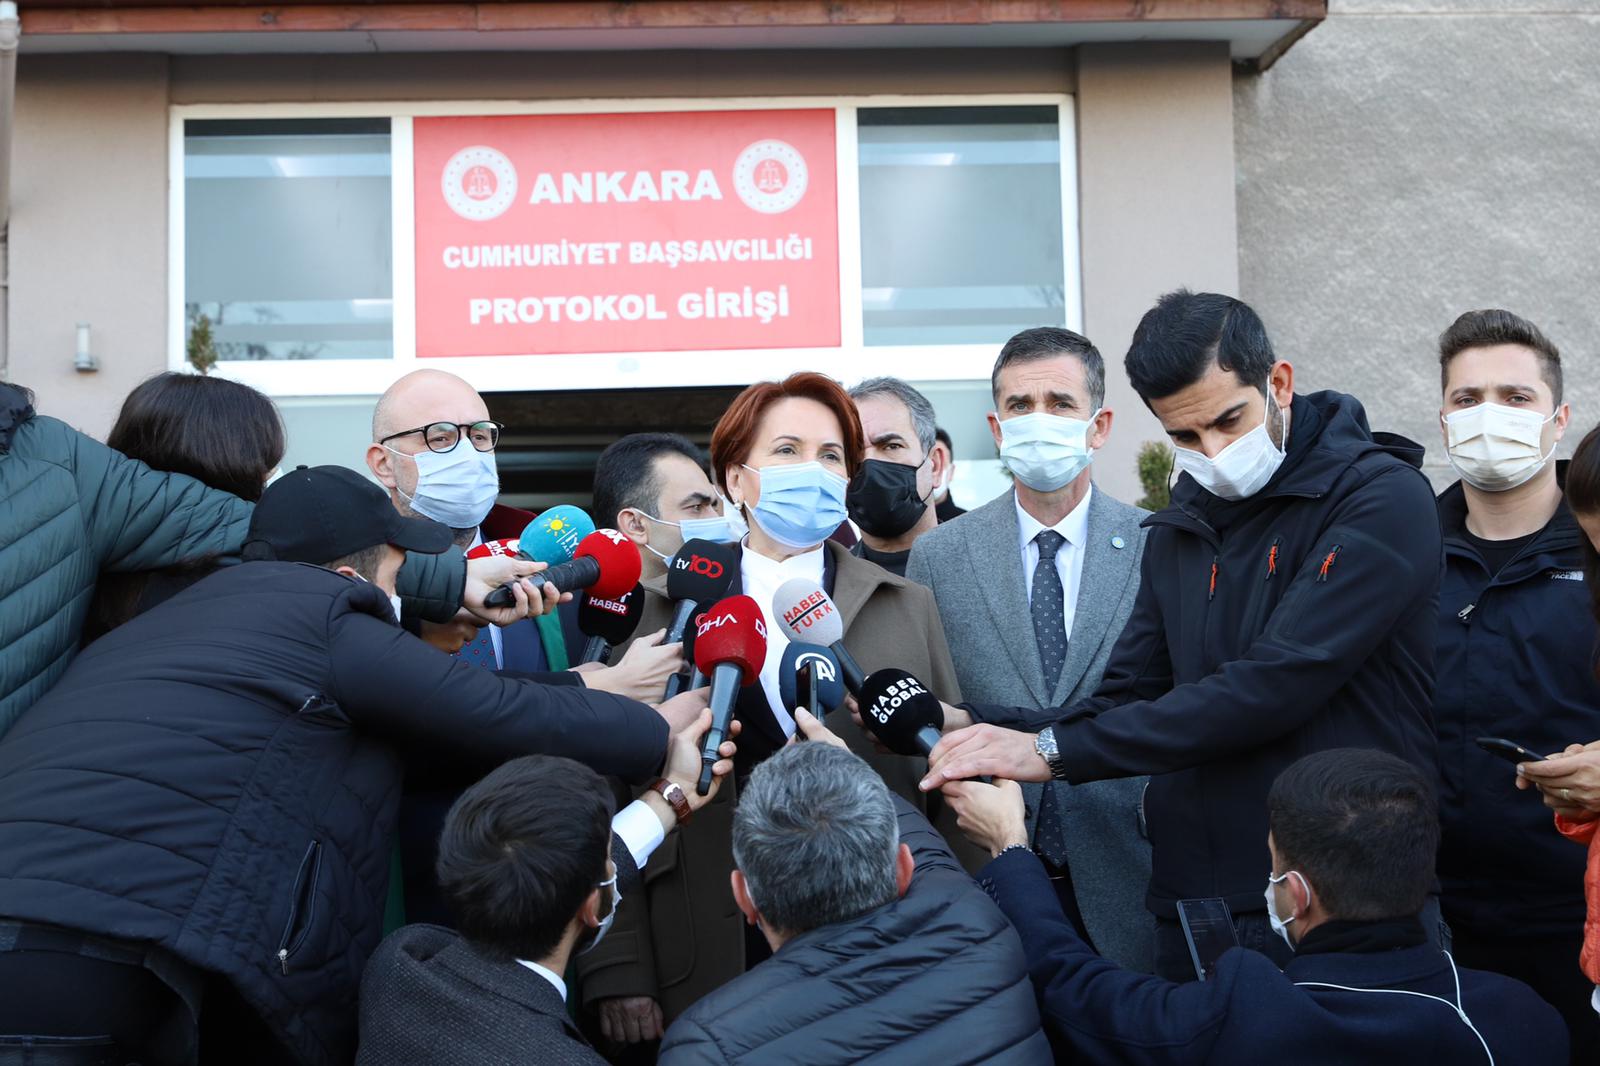 İYİ Parti Genel Başkanı Meral Akşener: “2017’de Antalya’da, mühürsüz oyların kabulüne yönelik YSK’nın Üyelerinin bunu kabul etmelerinden dolayı yaptığı bir eleştiri sebebiyle açılan bir dava ile ilgili Ankara Adliyesinde talimatlı olarak ifade verdim!”